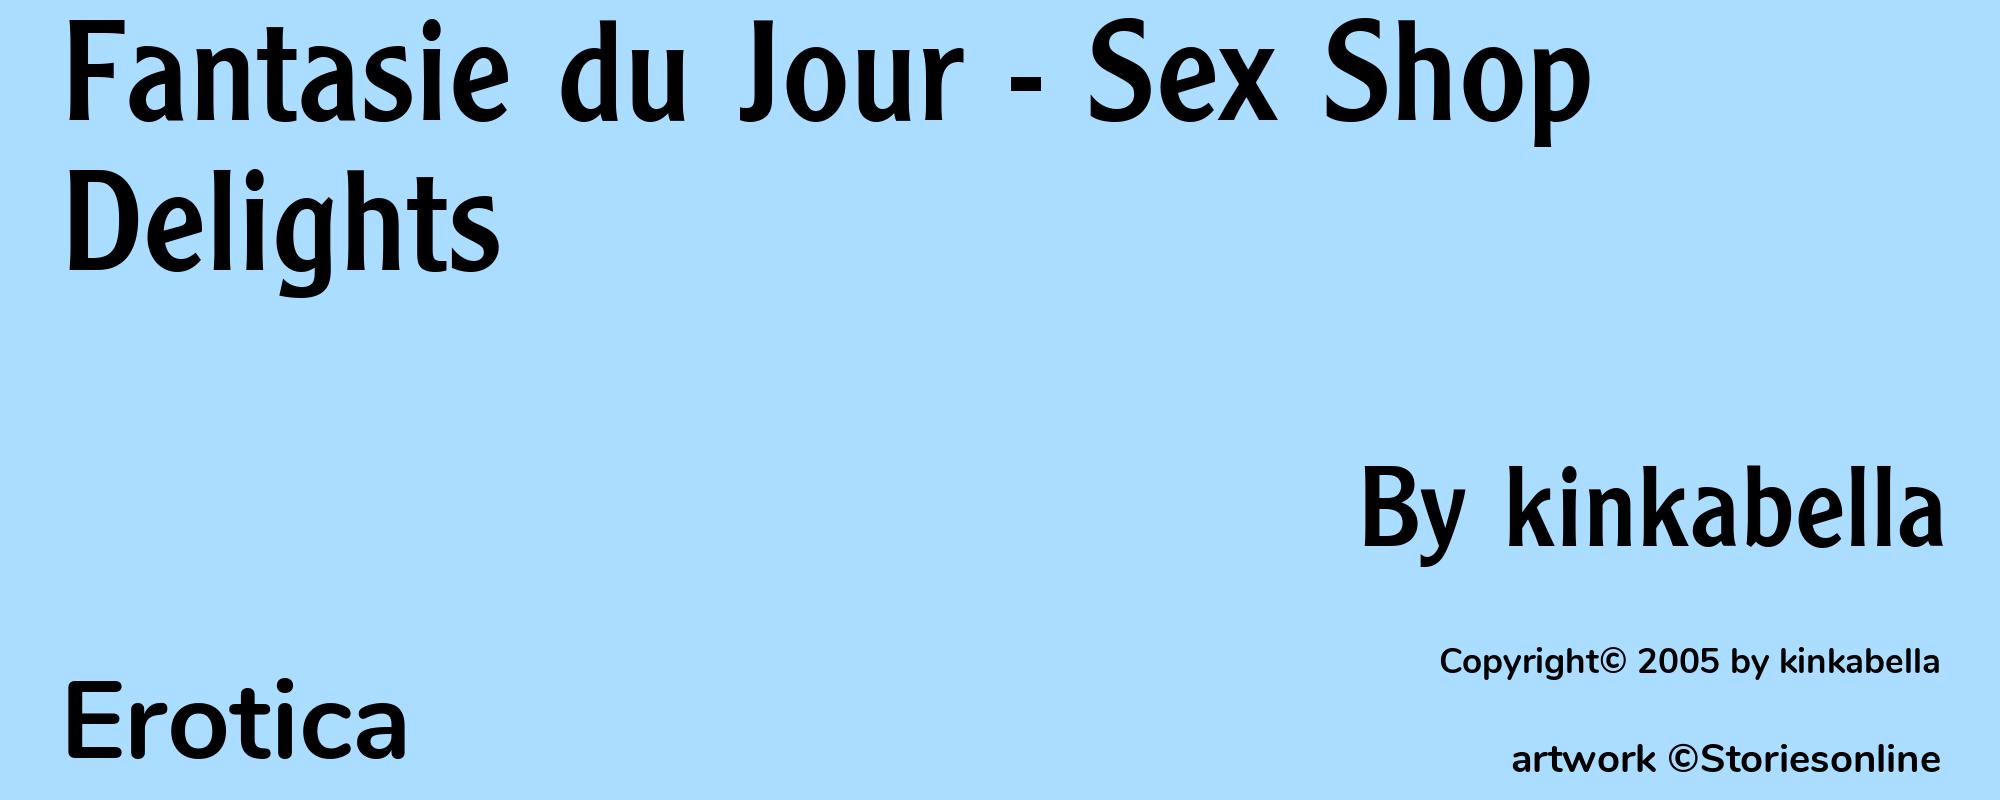 Fantasie du Jour - Sex Shop Delights - Cover